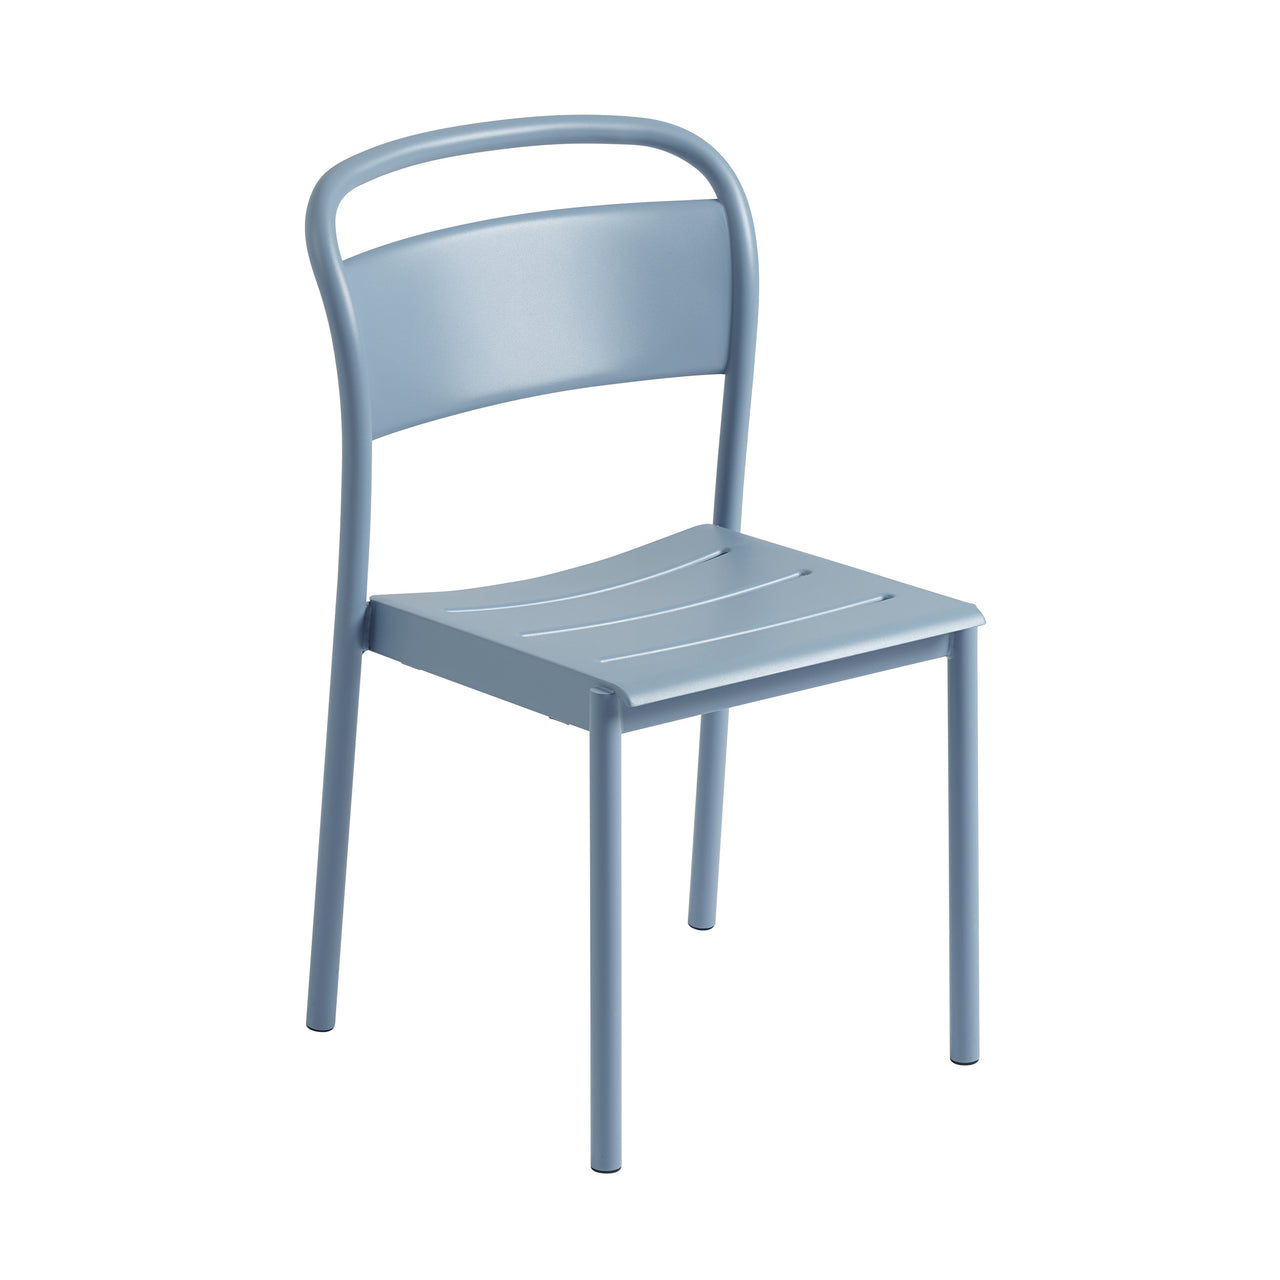 Linear Steel Side Chair: Pale Blue